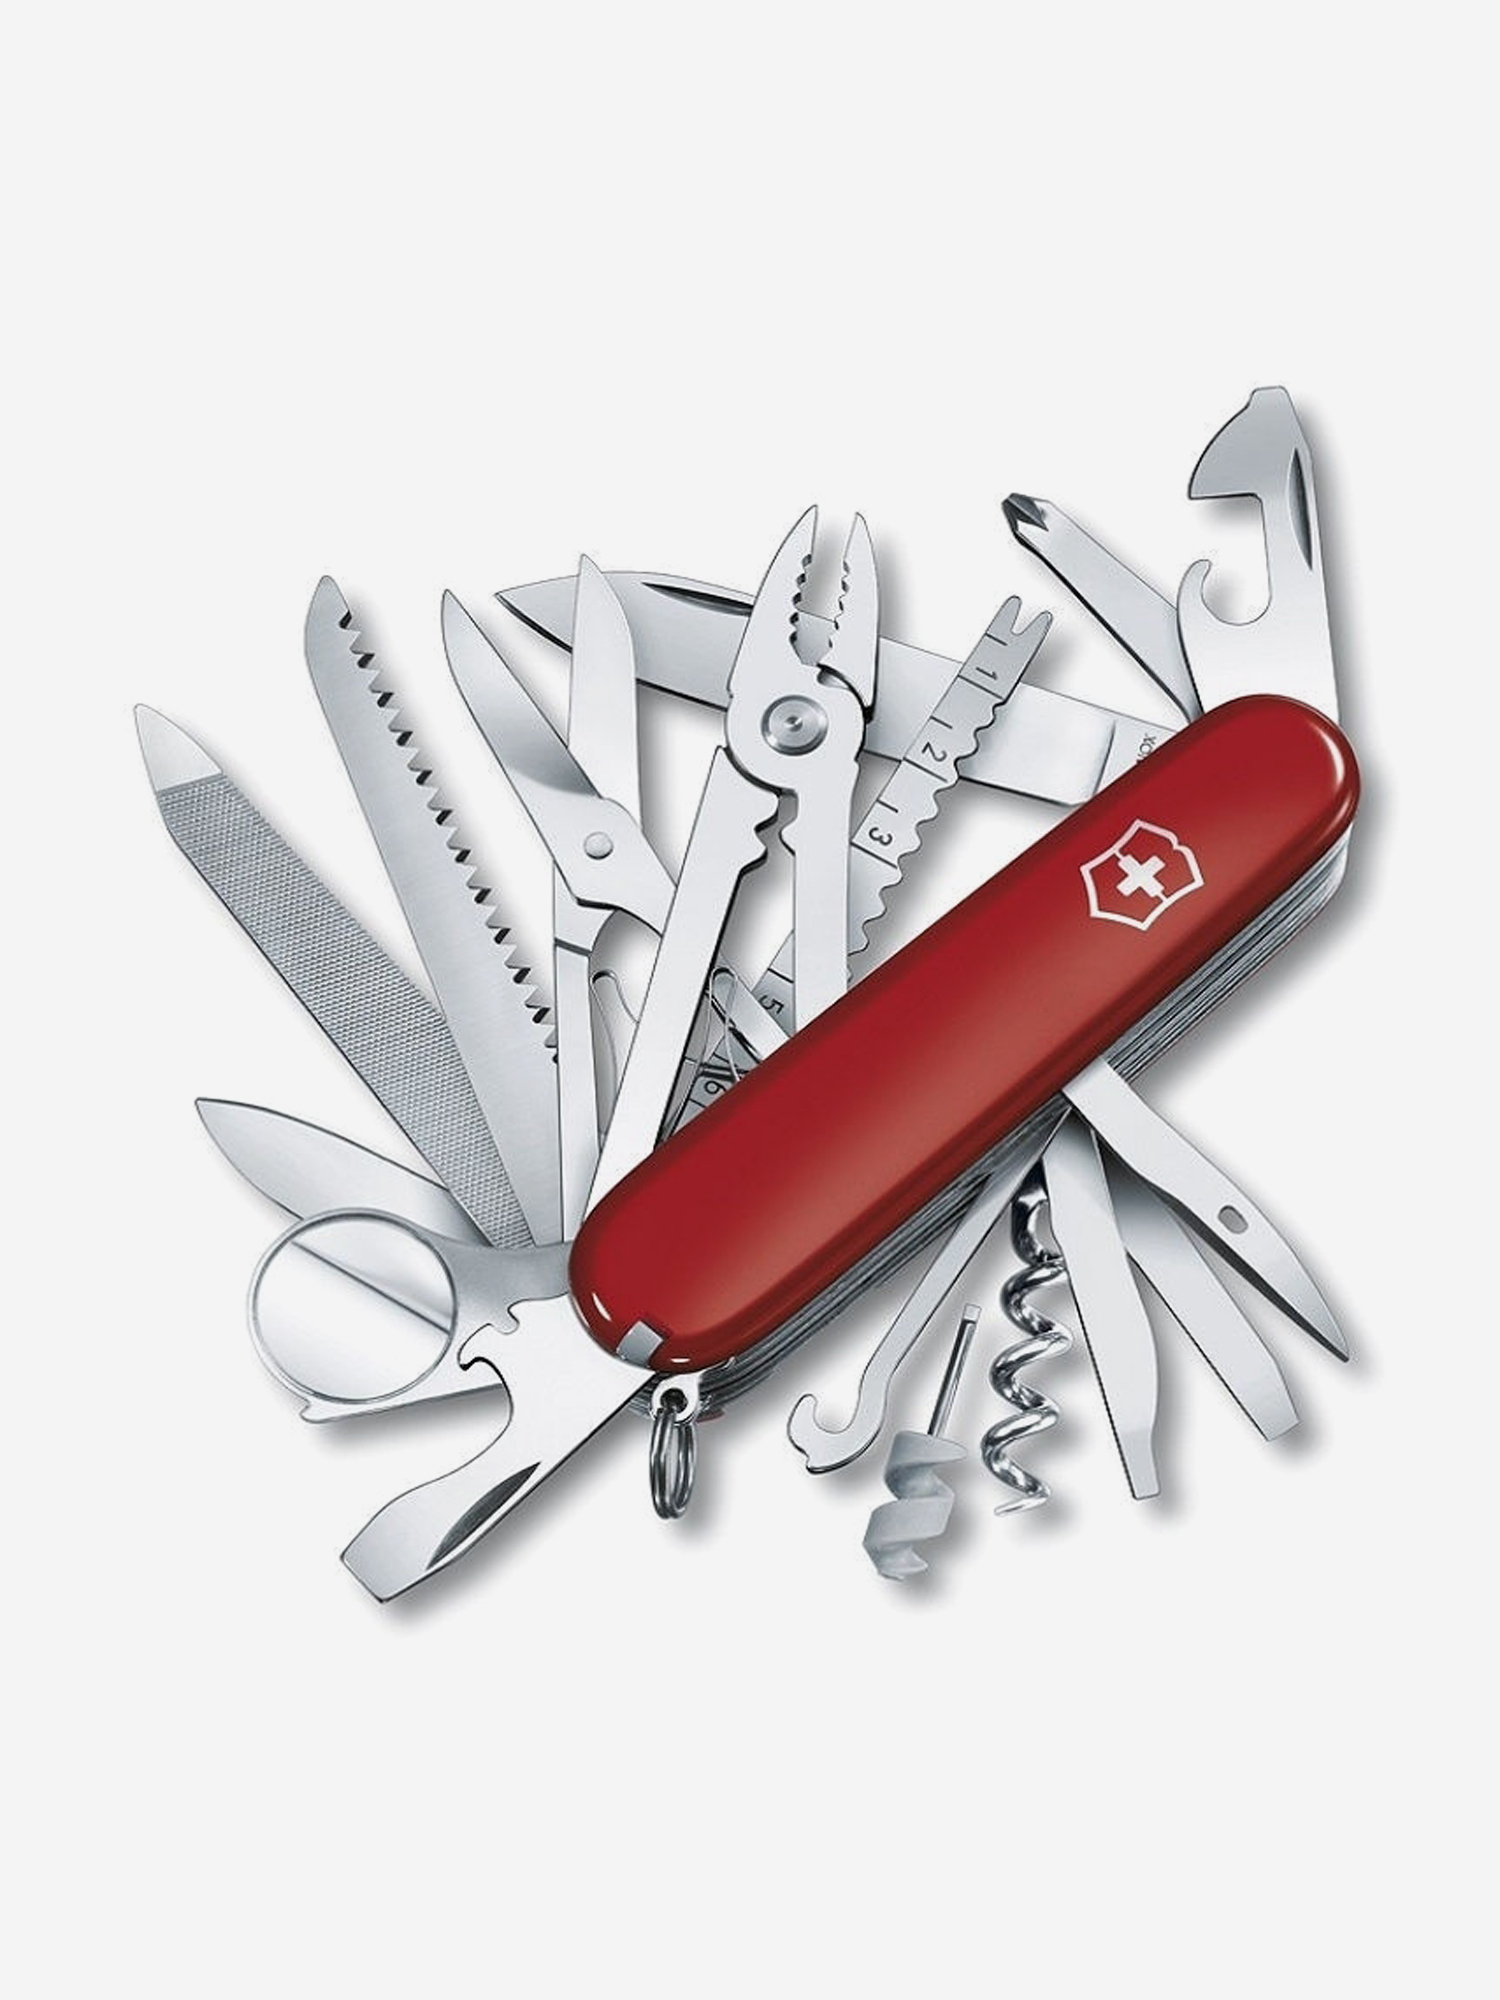 Нож складной Victorinox SwissChamp, 91 мм, 33 функции, Красный нож victorinox swisschamp wood 1 6791 63